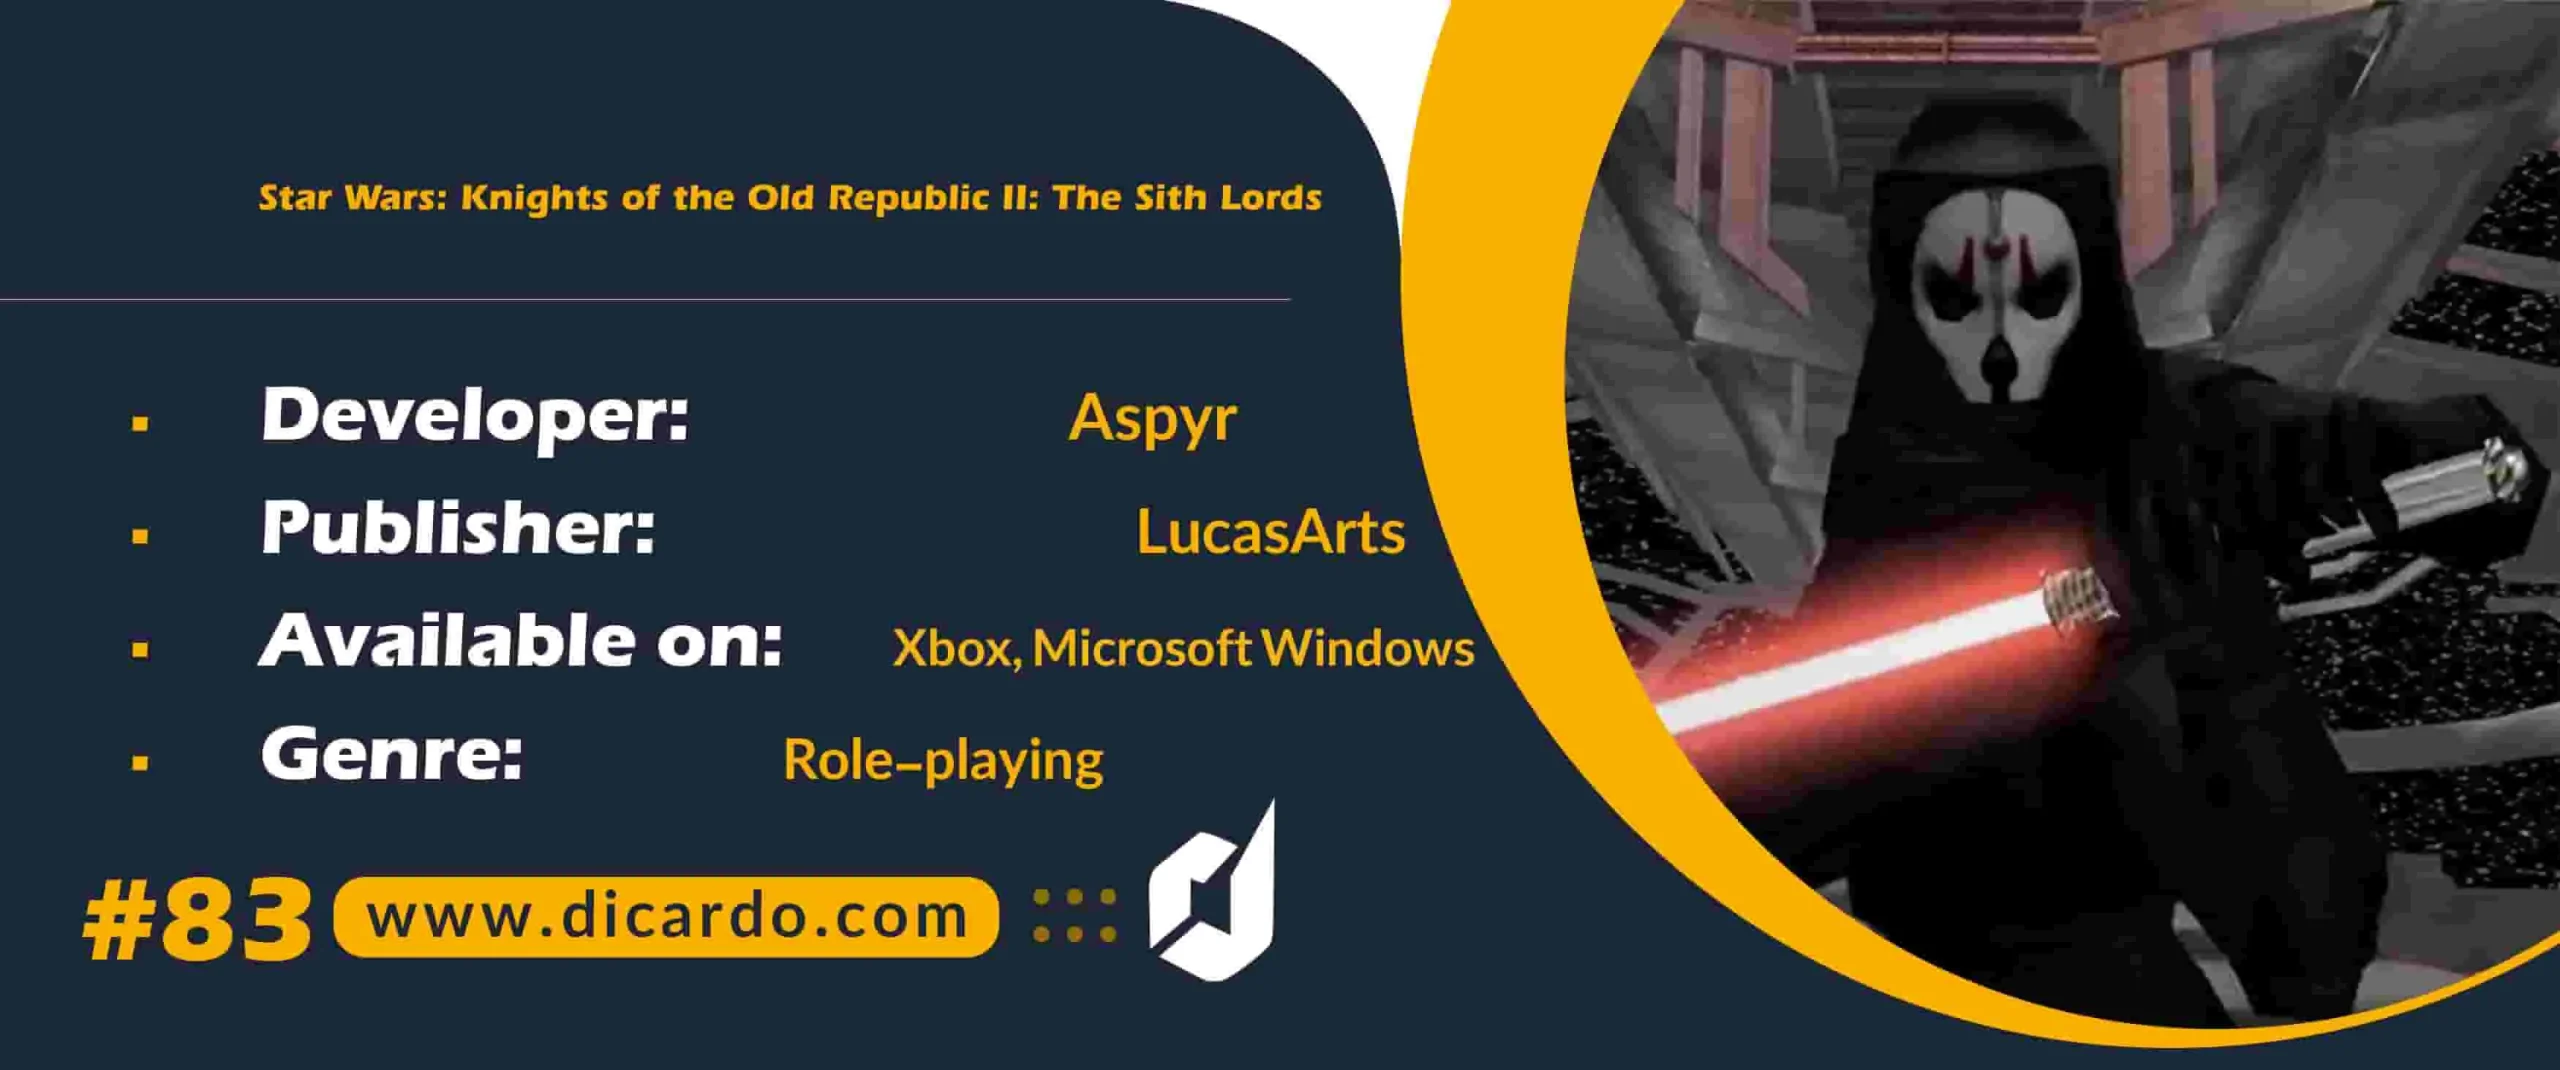 #83 استار وارز نایتز آو د الد ریپابلیک 2 د سیت لوردزStar Wars: Knights of the Old Republic II: The Sith Lords